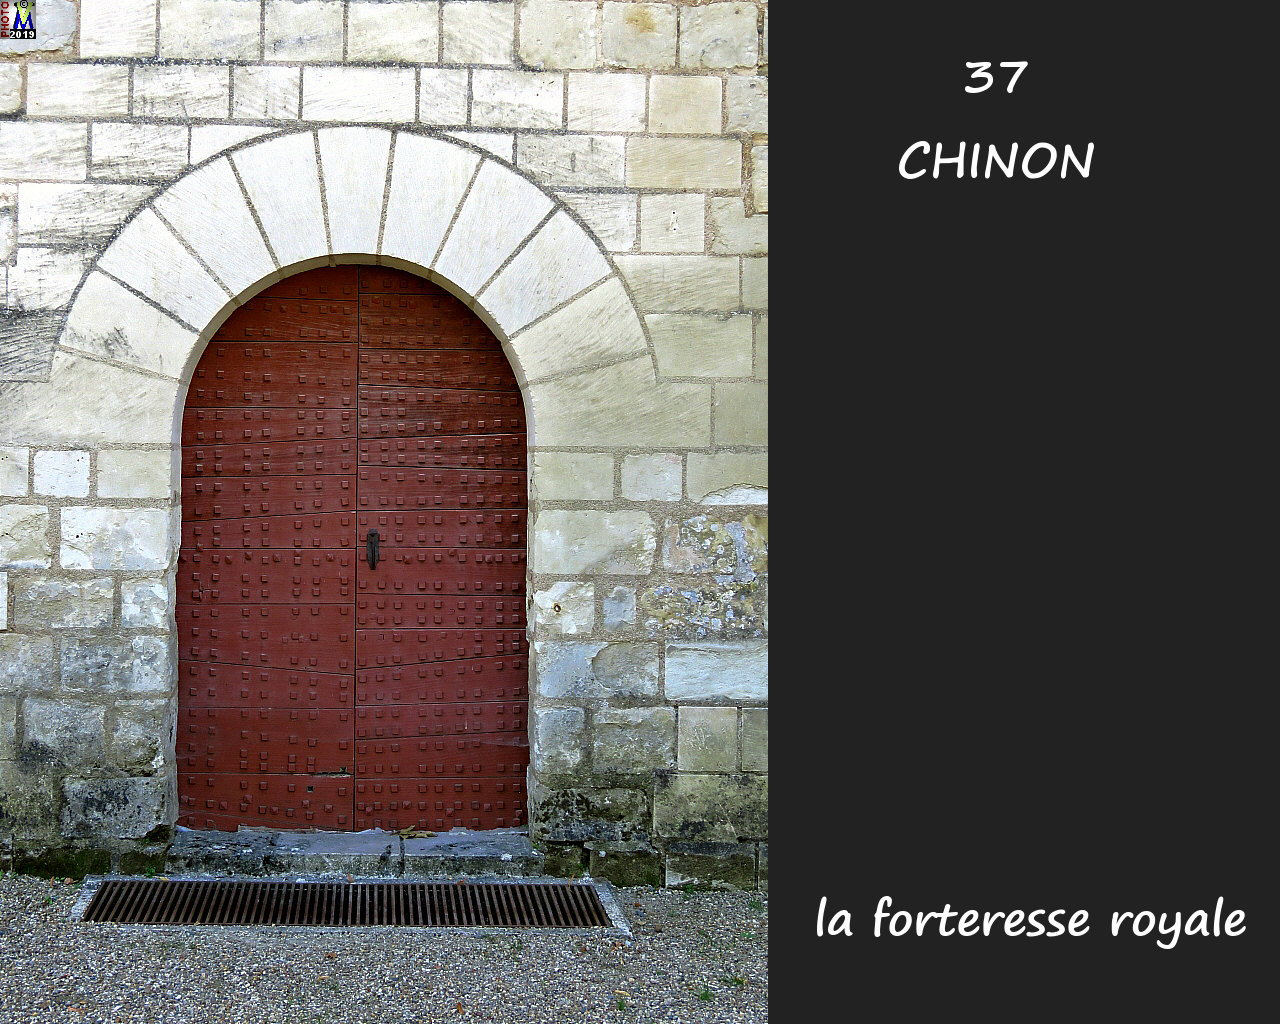 37CHINON_chateau_1050.jpg